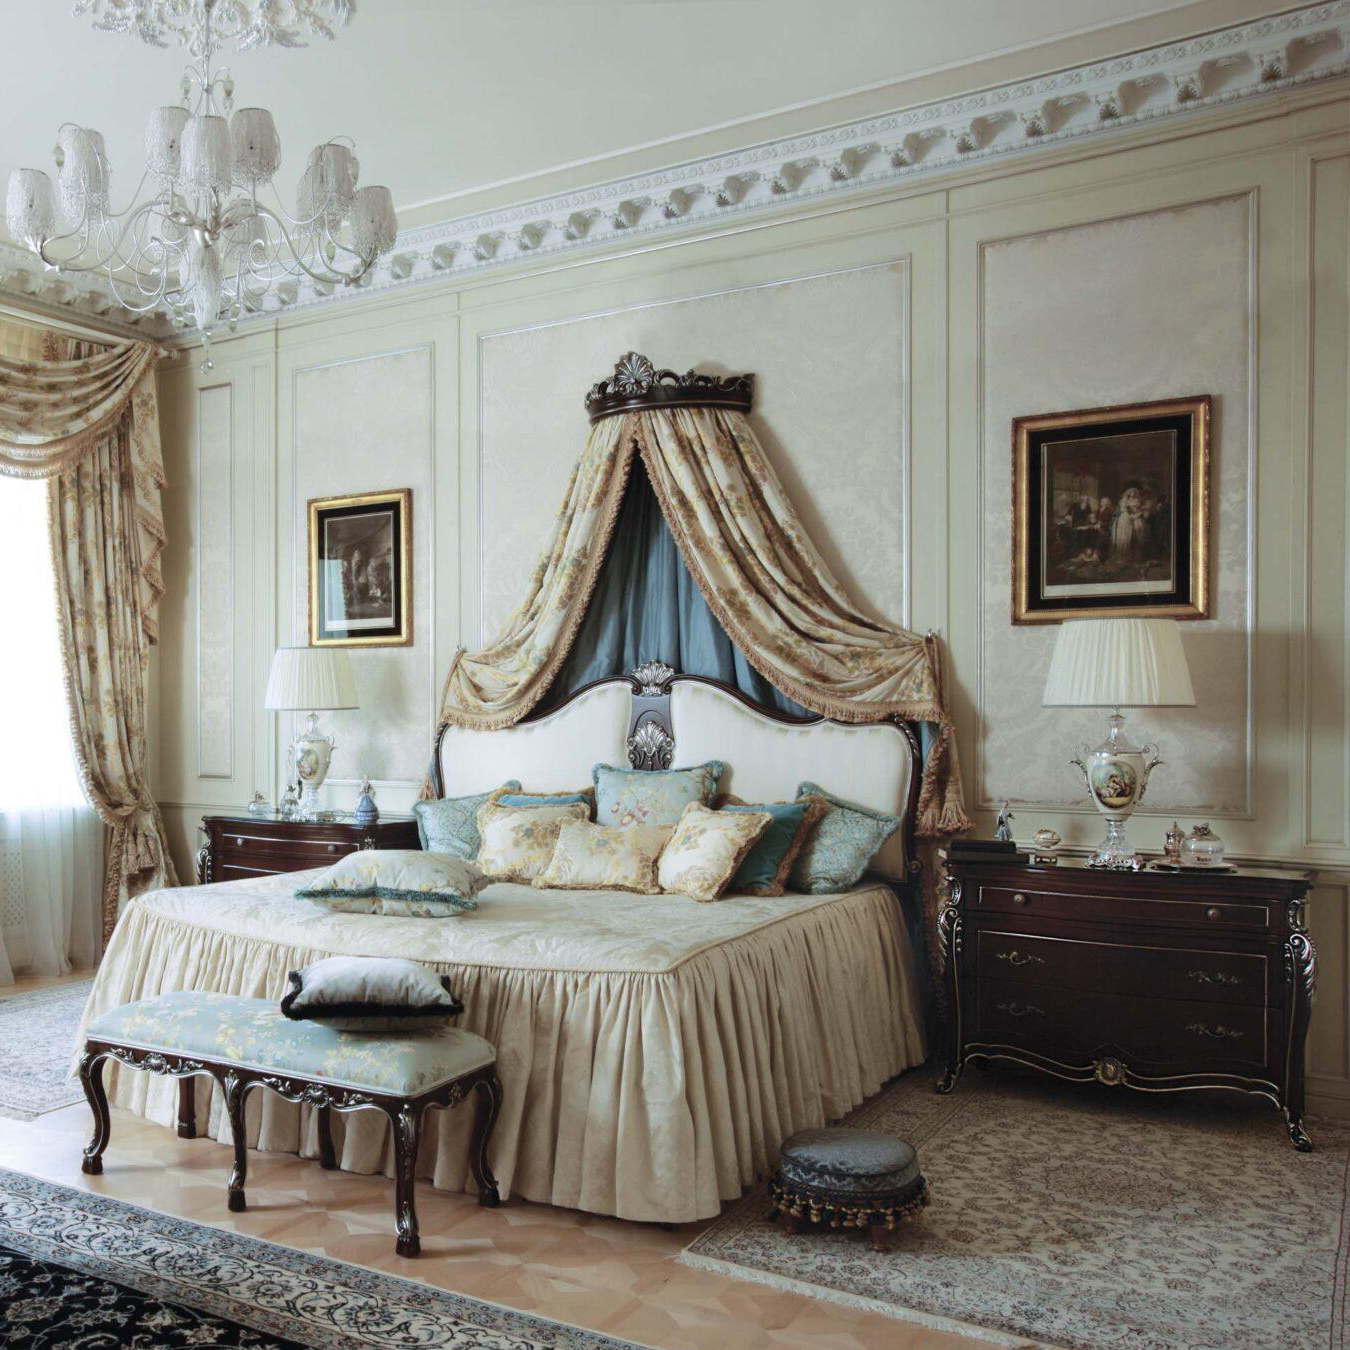 ACAP: Scarlatti Baroque Style Bedroom